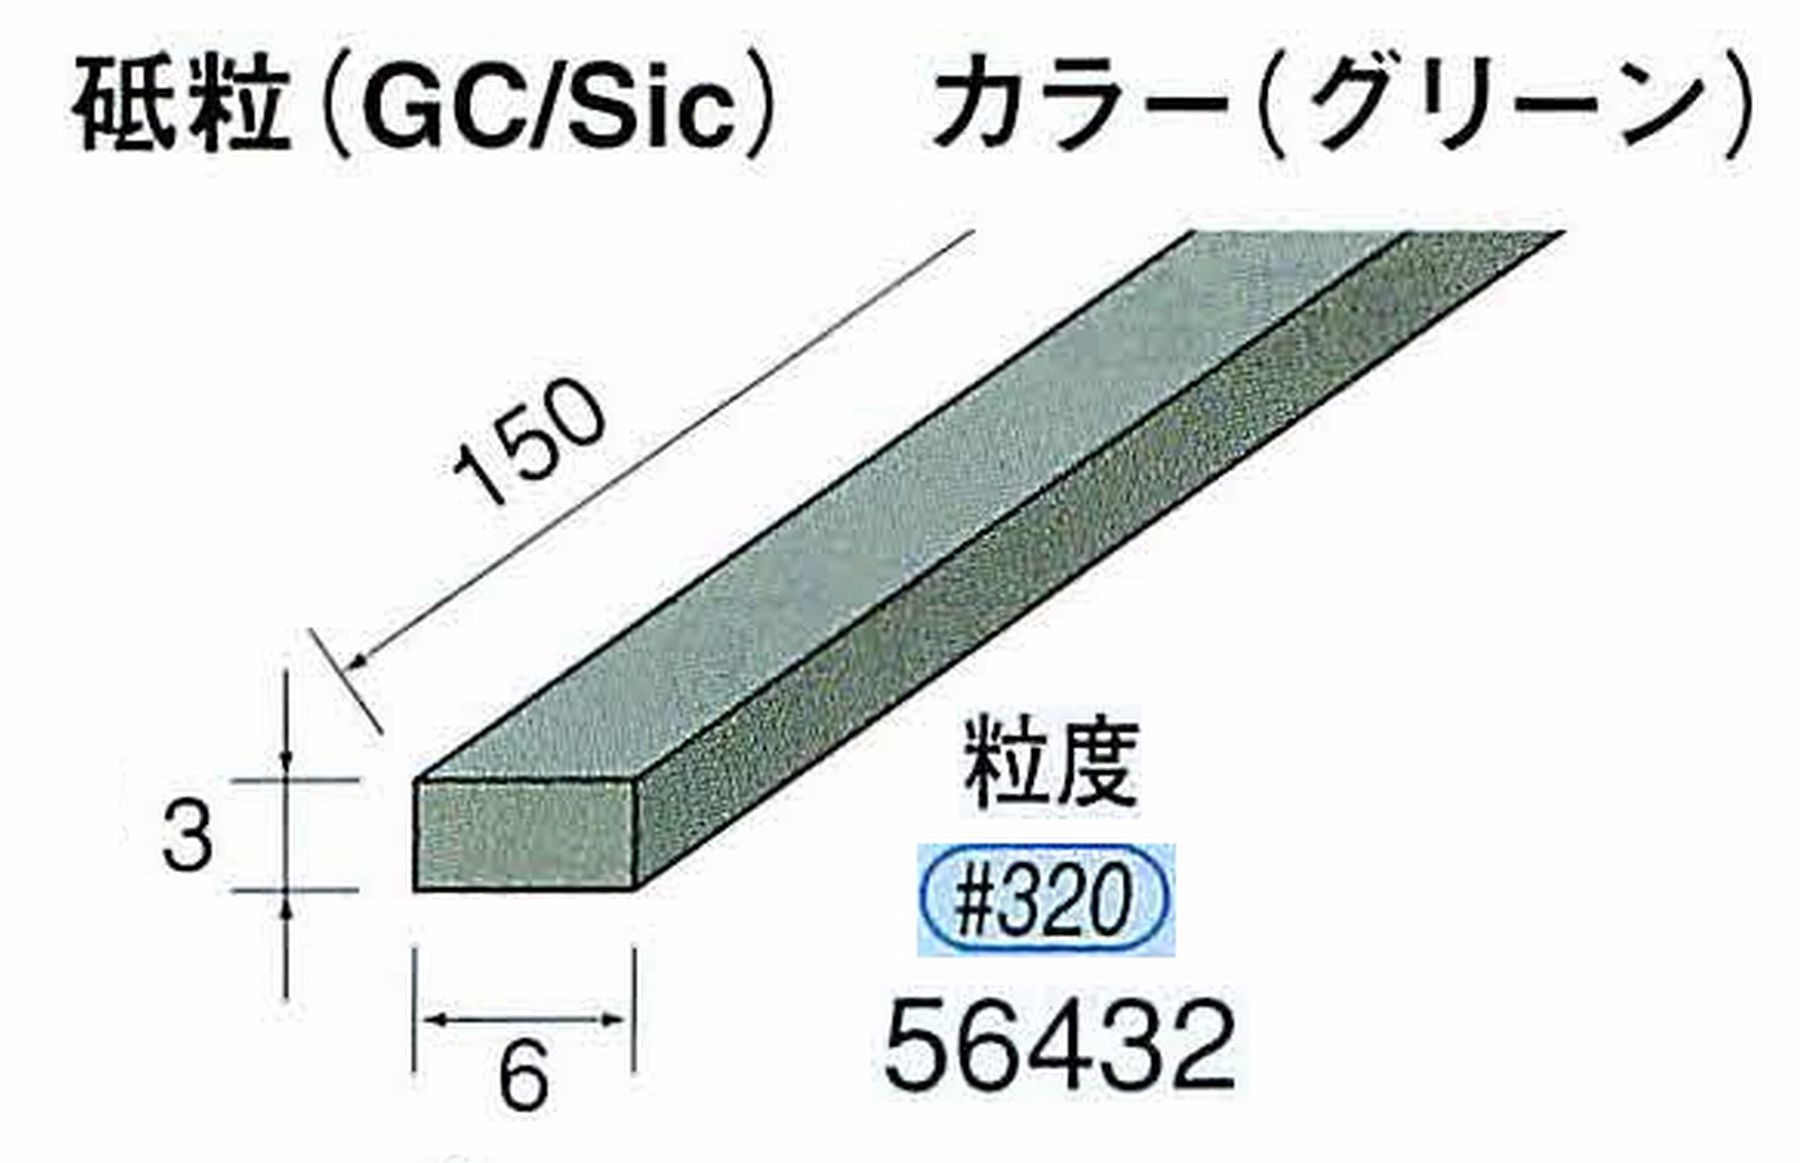 ナカニシ/NAKANISHI スティック砥石 グリーン・フィニッシュシリーズ 砥粒(GC/Sic) 56432